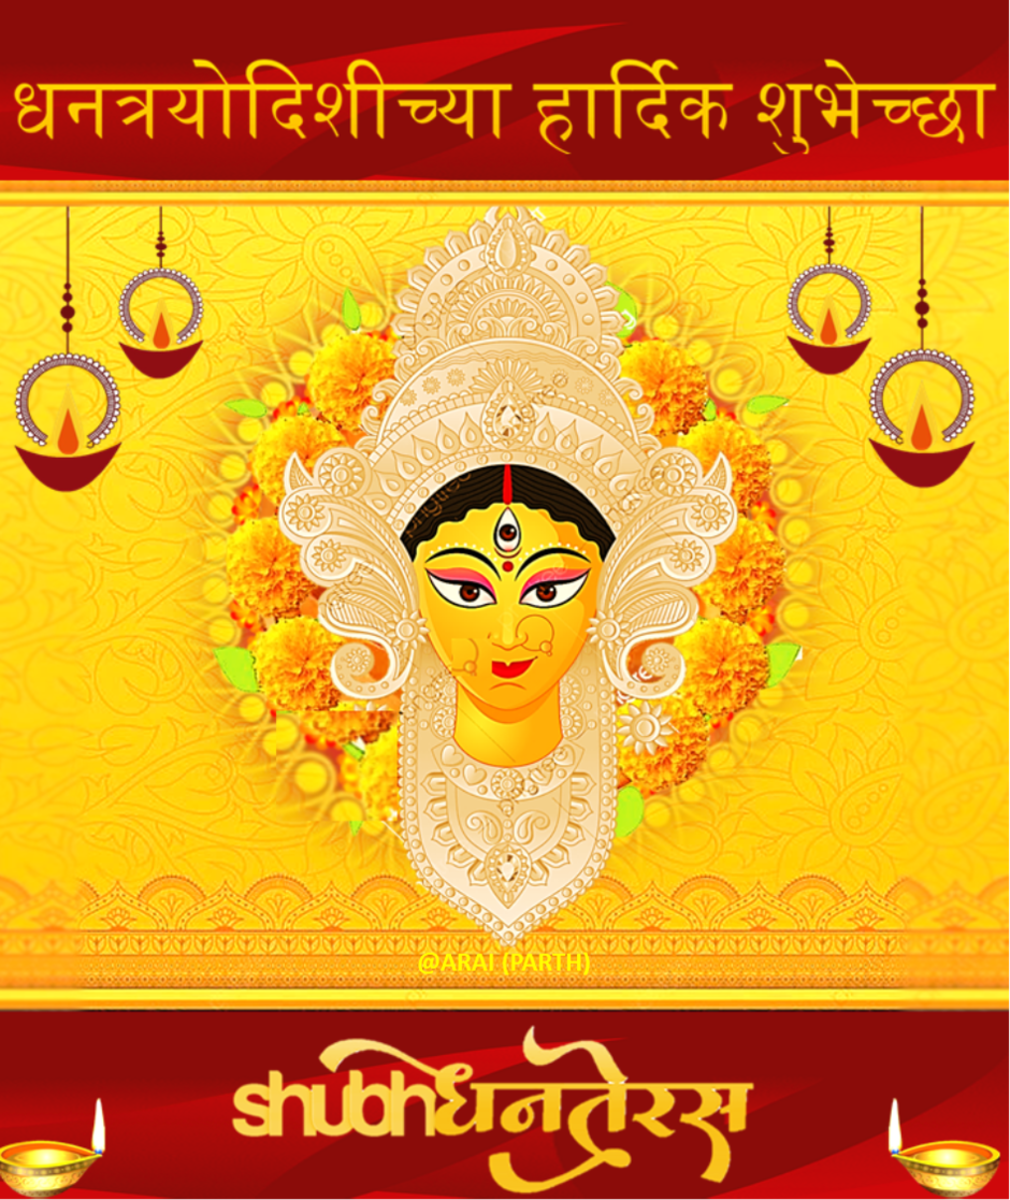 Dhantrayodashi (Dhanteras) Wishes in Marathi Language